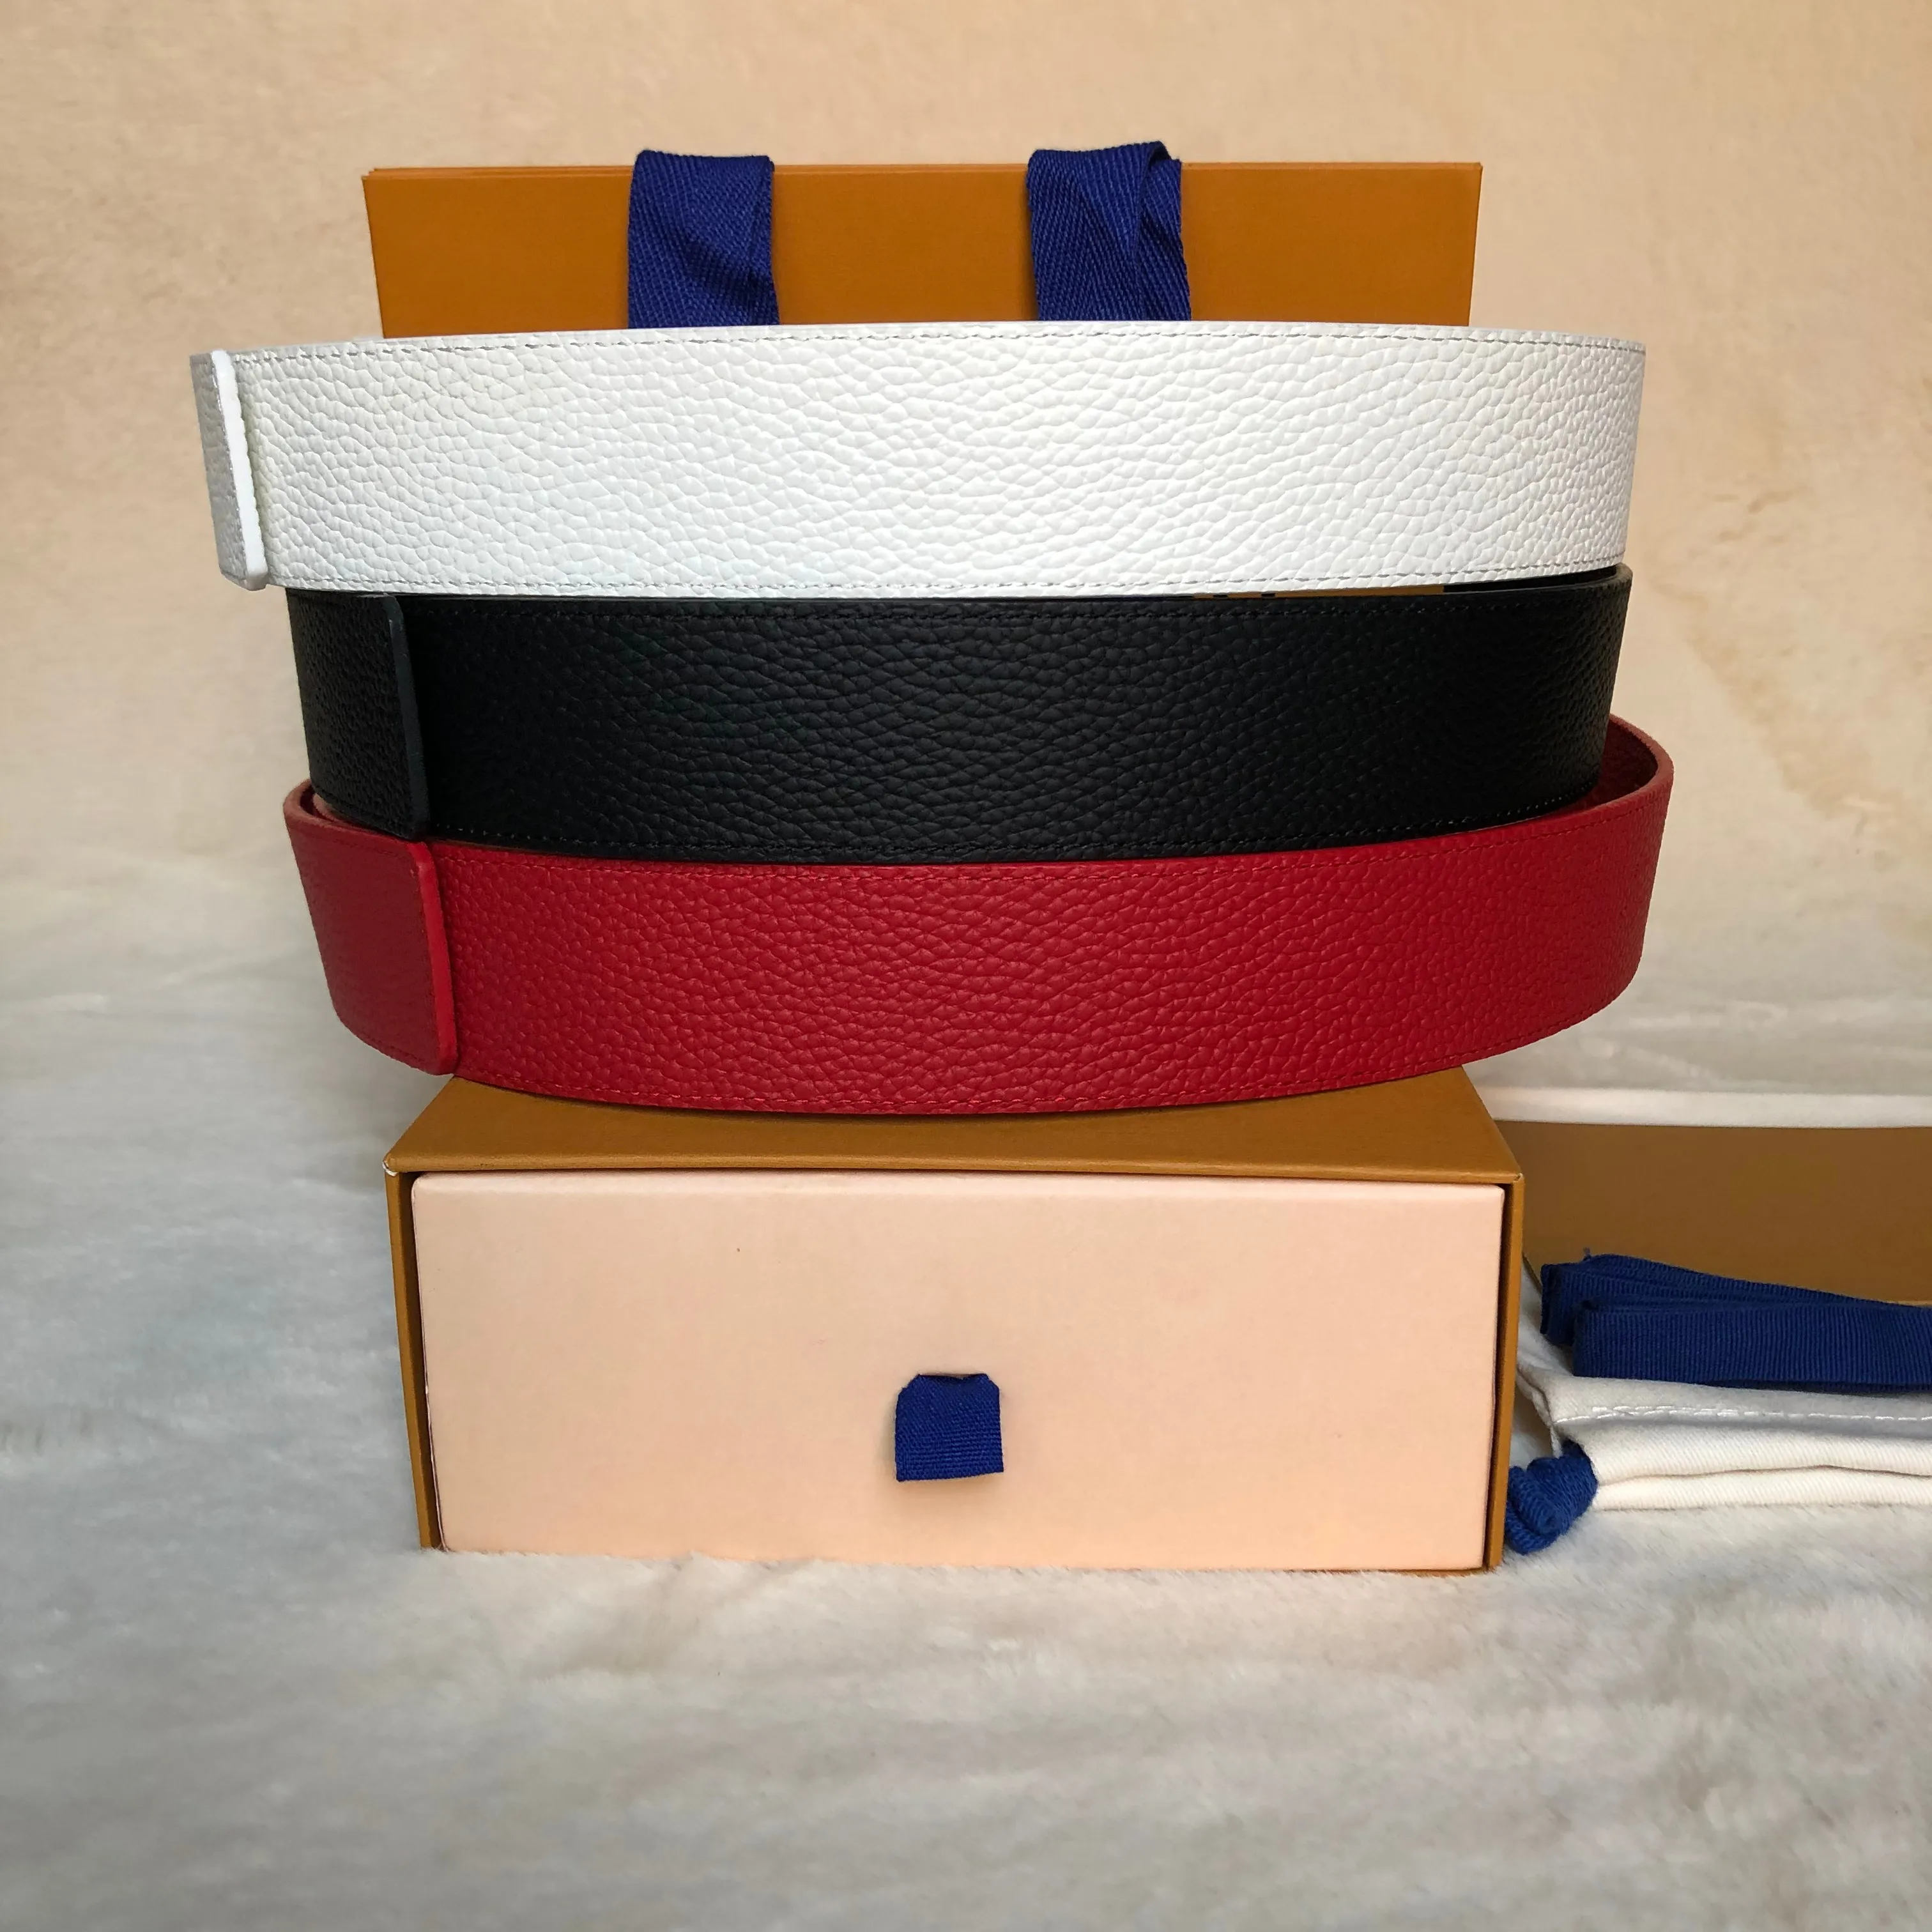 mens ceinture ceintures pour hommes designer chaud meilleure qualité noir blanc rouge en cuir véritable hommes ceinture avec boîte classique lettre marron grille noire grille blanche hommes ceintures shippin gratuit